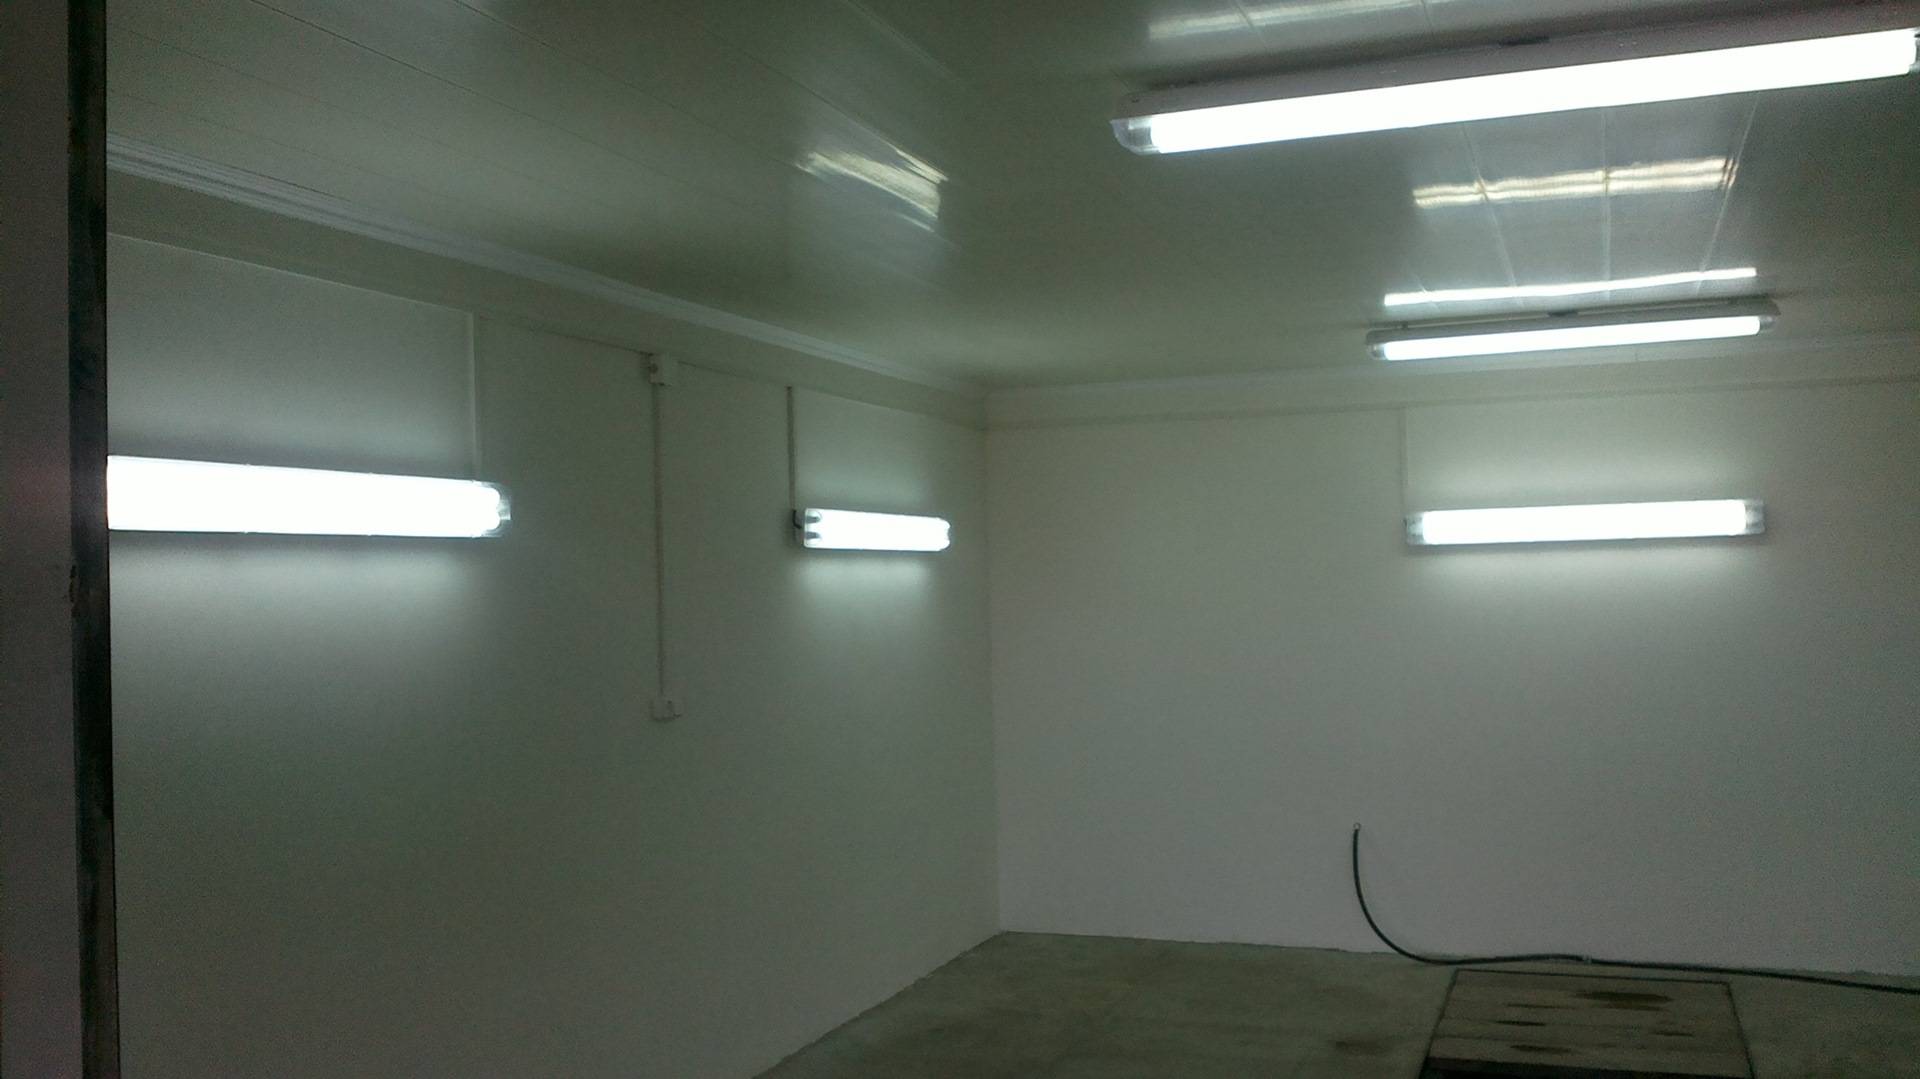 Как сделать освещение в гараже своими руками | онлайн-журнал о ремонте и дизайне